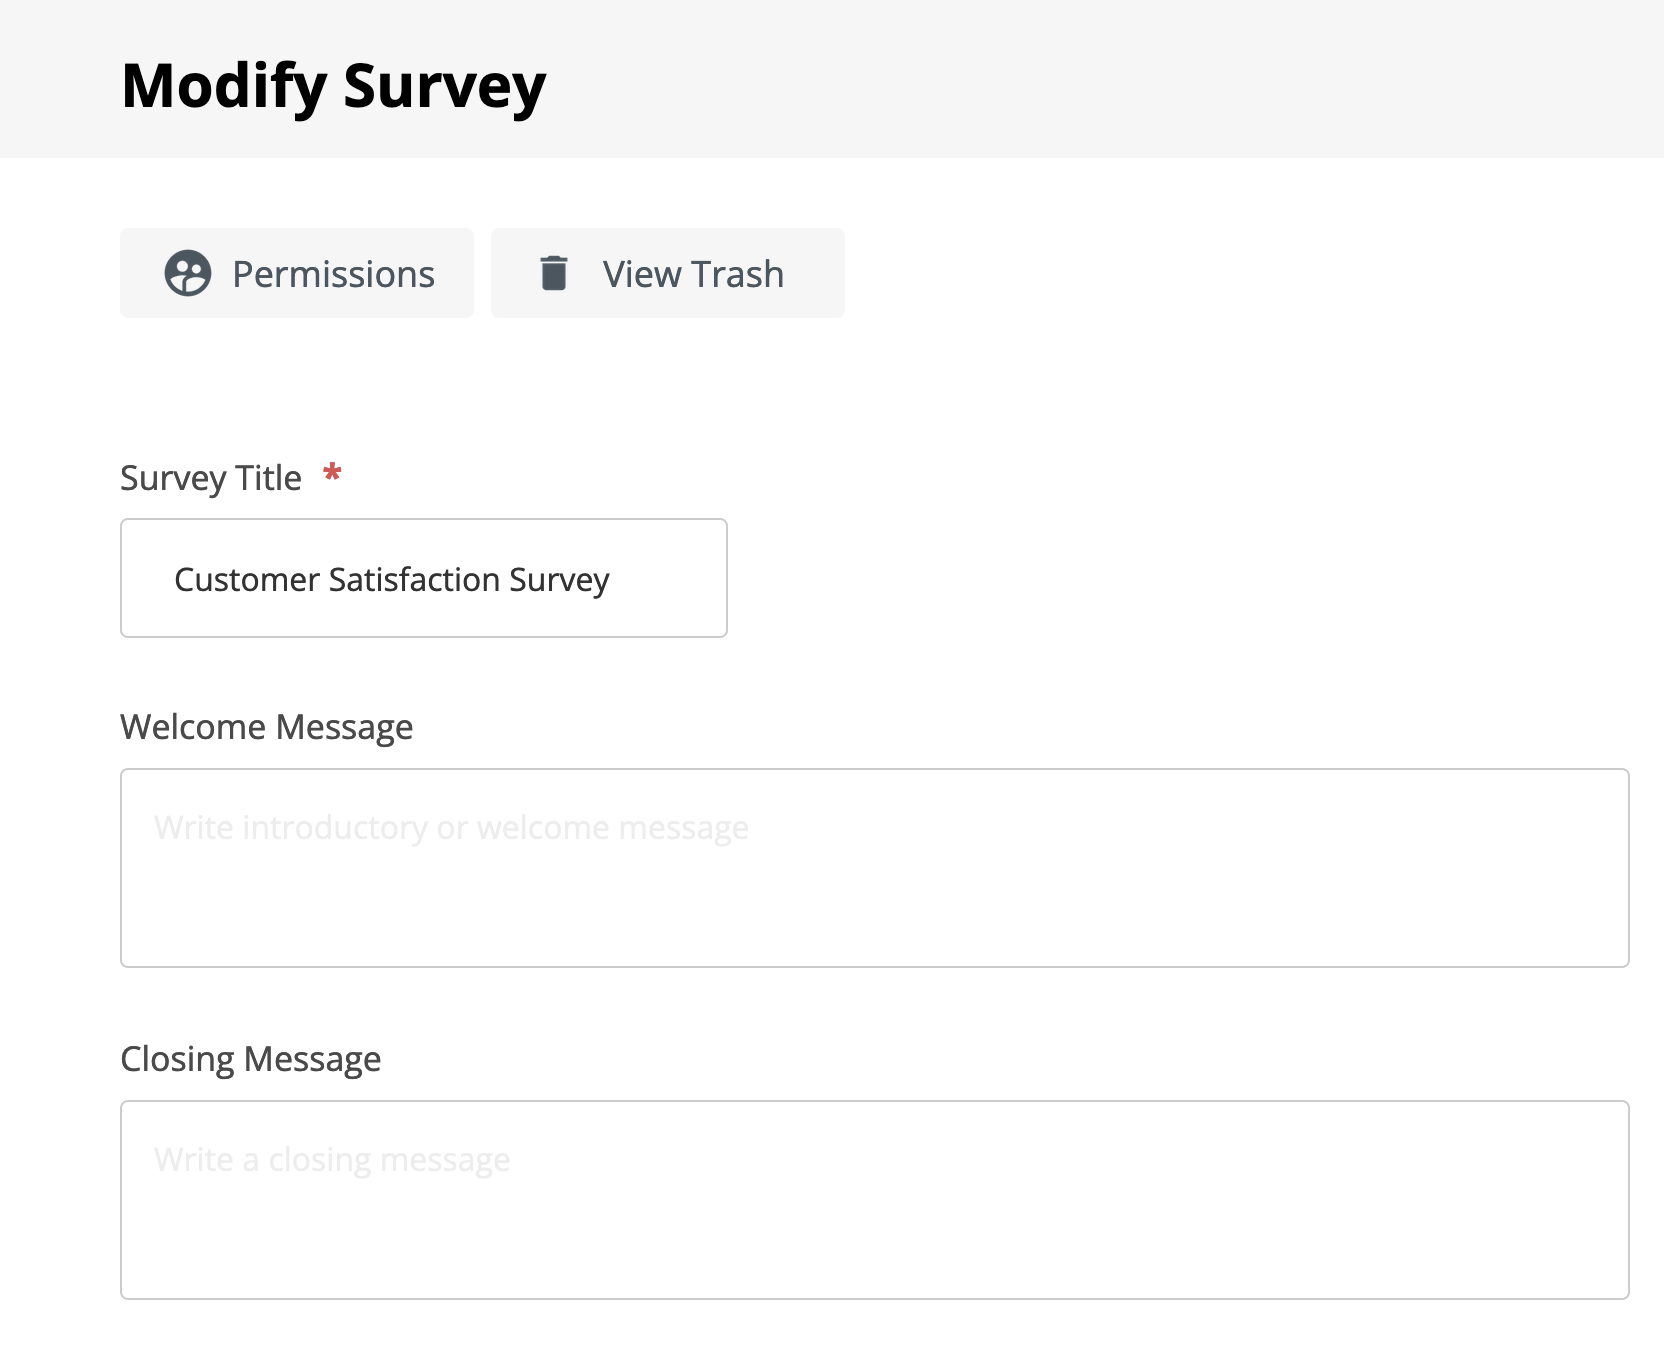 Modify the survey details